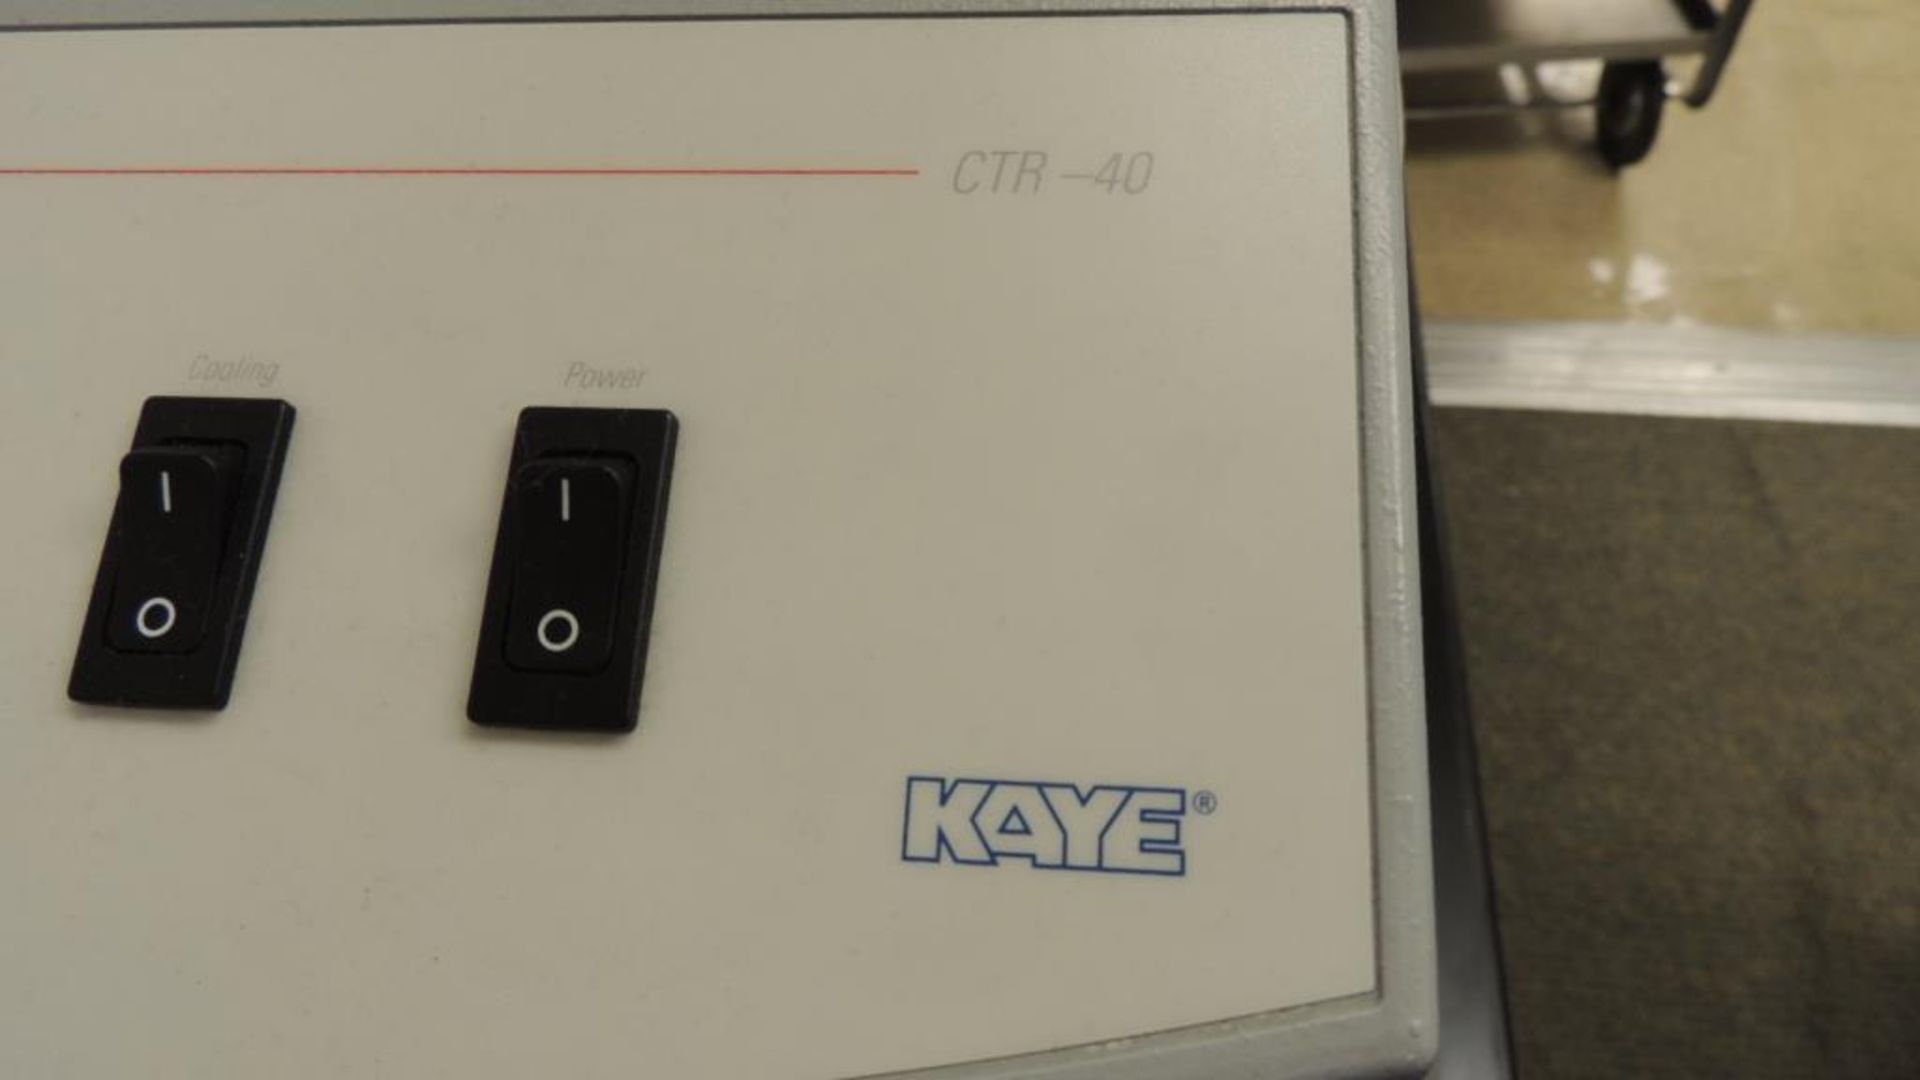 Kaye CTR-40 Bath; Kaye CTR-40 for temperature advanced digital, calibration 120v, KAYE ValProbe, - Image 3 of 8